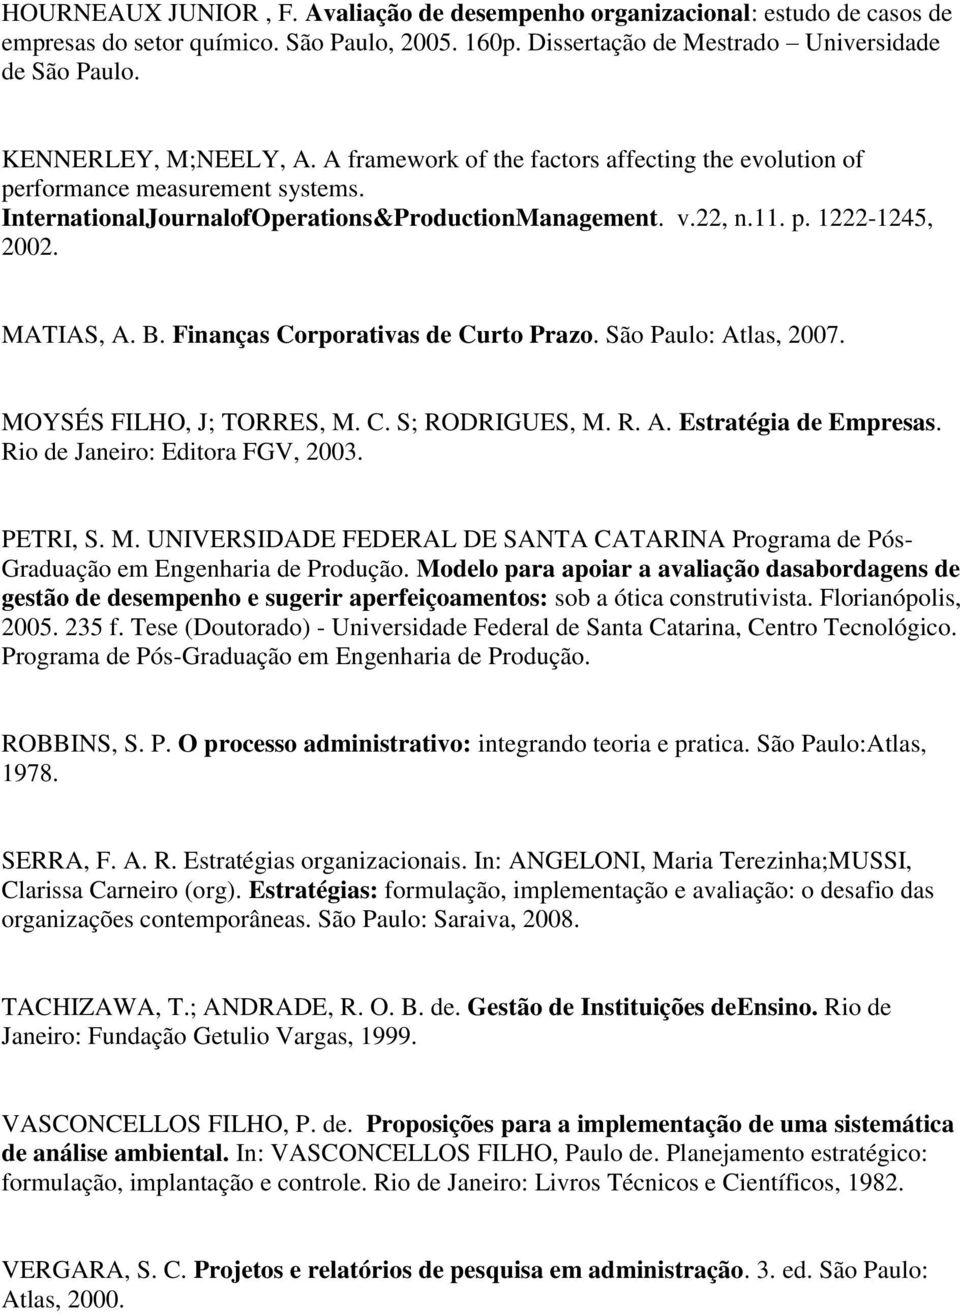 MATIAS, A. B. Finanças Corporativas de Curto Prazo. São Paulo: Atlas, 2007. MOYSÉS FILHO, J; TORRES, M. C. S; RODRIGUES, M. R. A. Estratégia de Empresas. Rio de Janeiro: Editora FGV, 2003. PETRI, S.